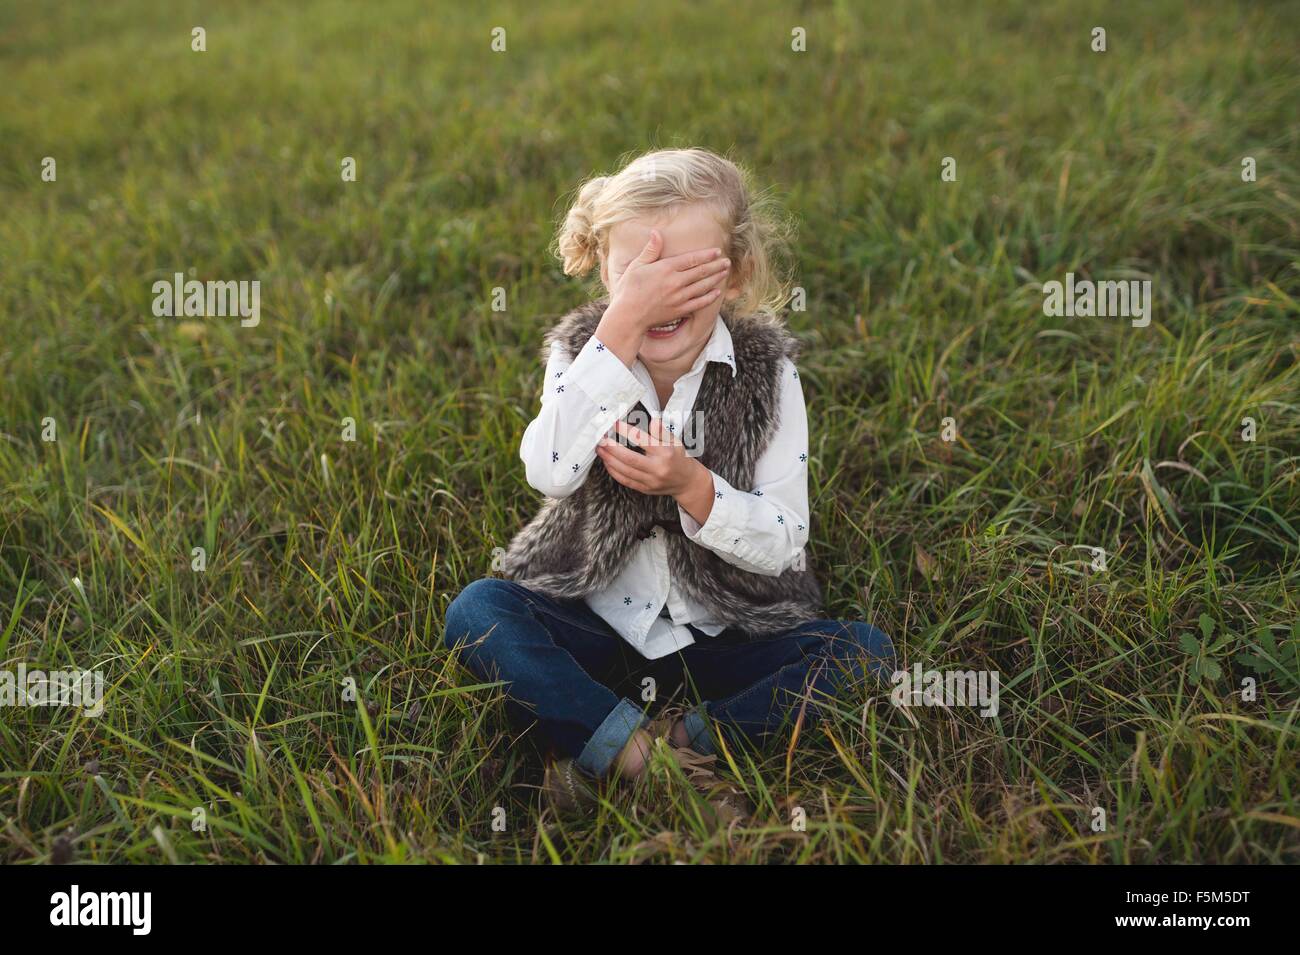 Giovane ragazza seduta su erba, che copre gli occhi Foto Stock